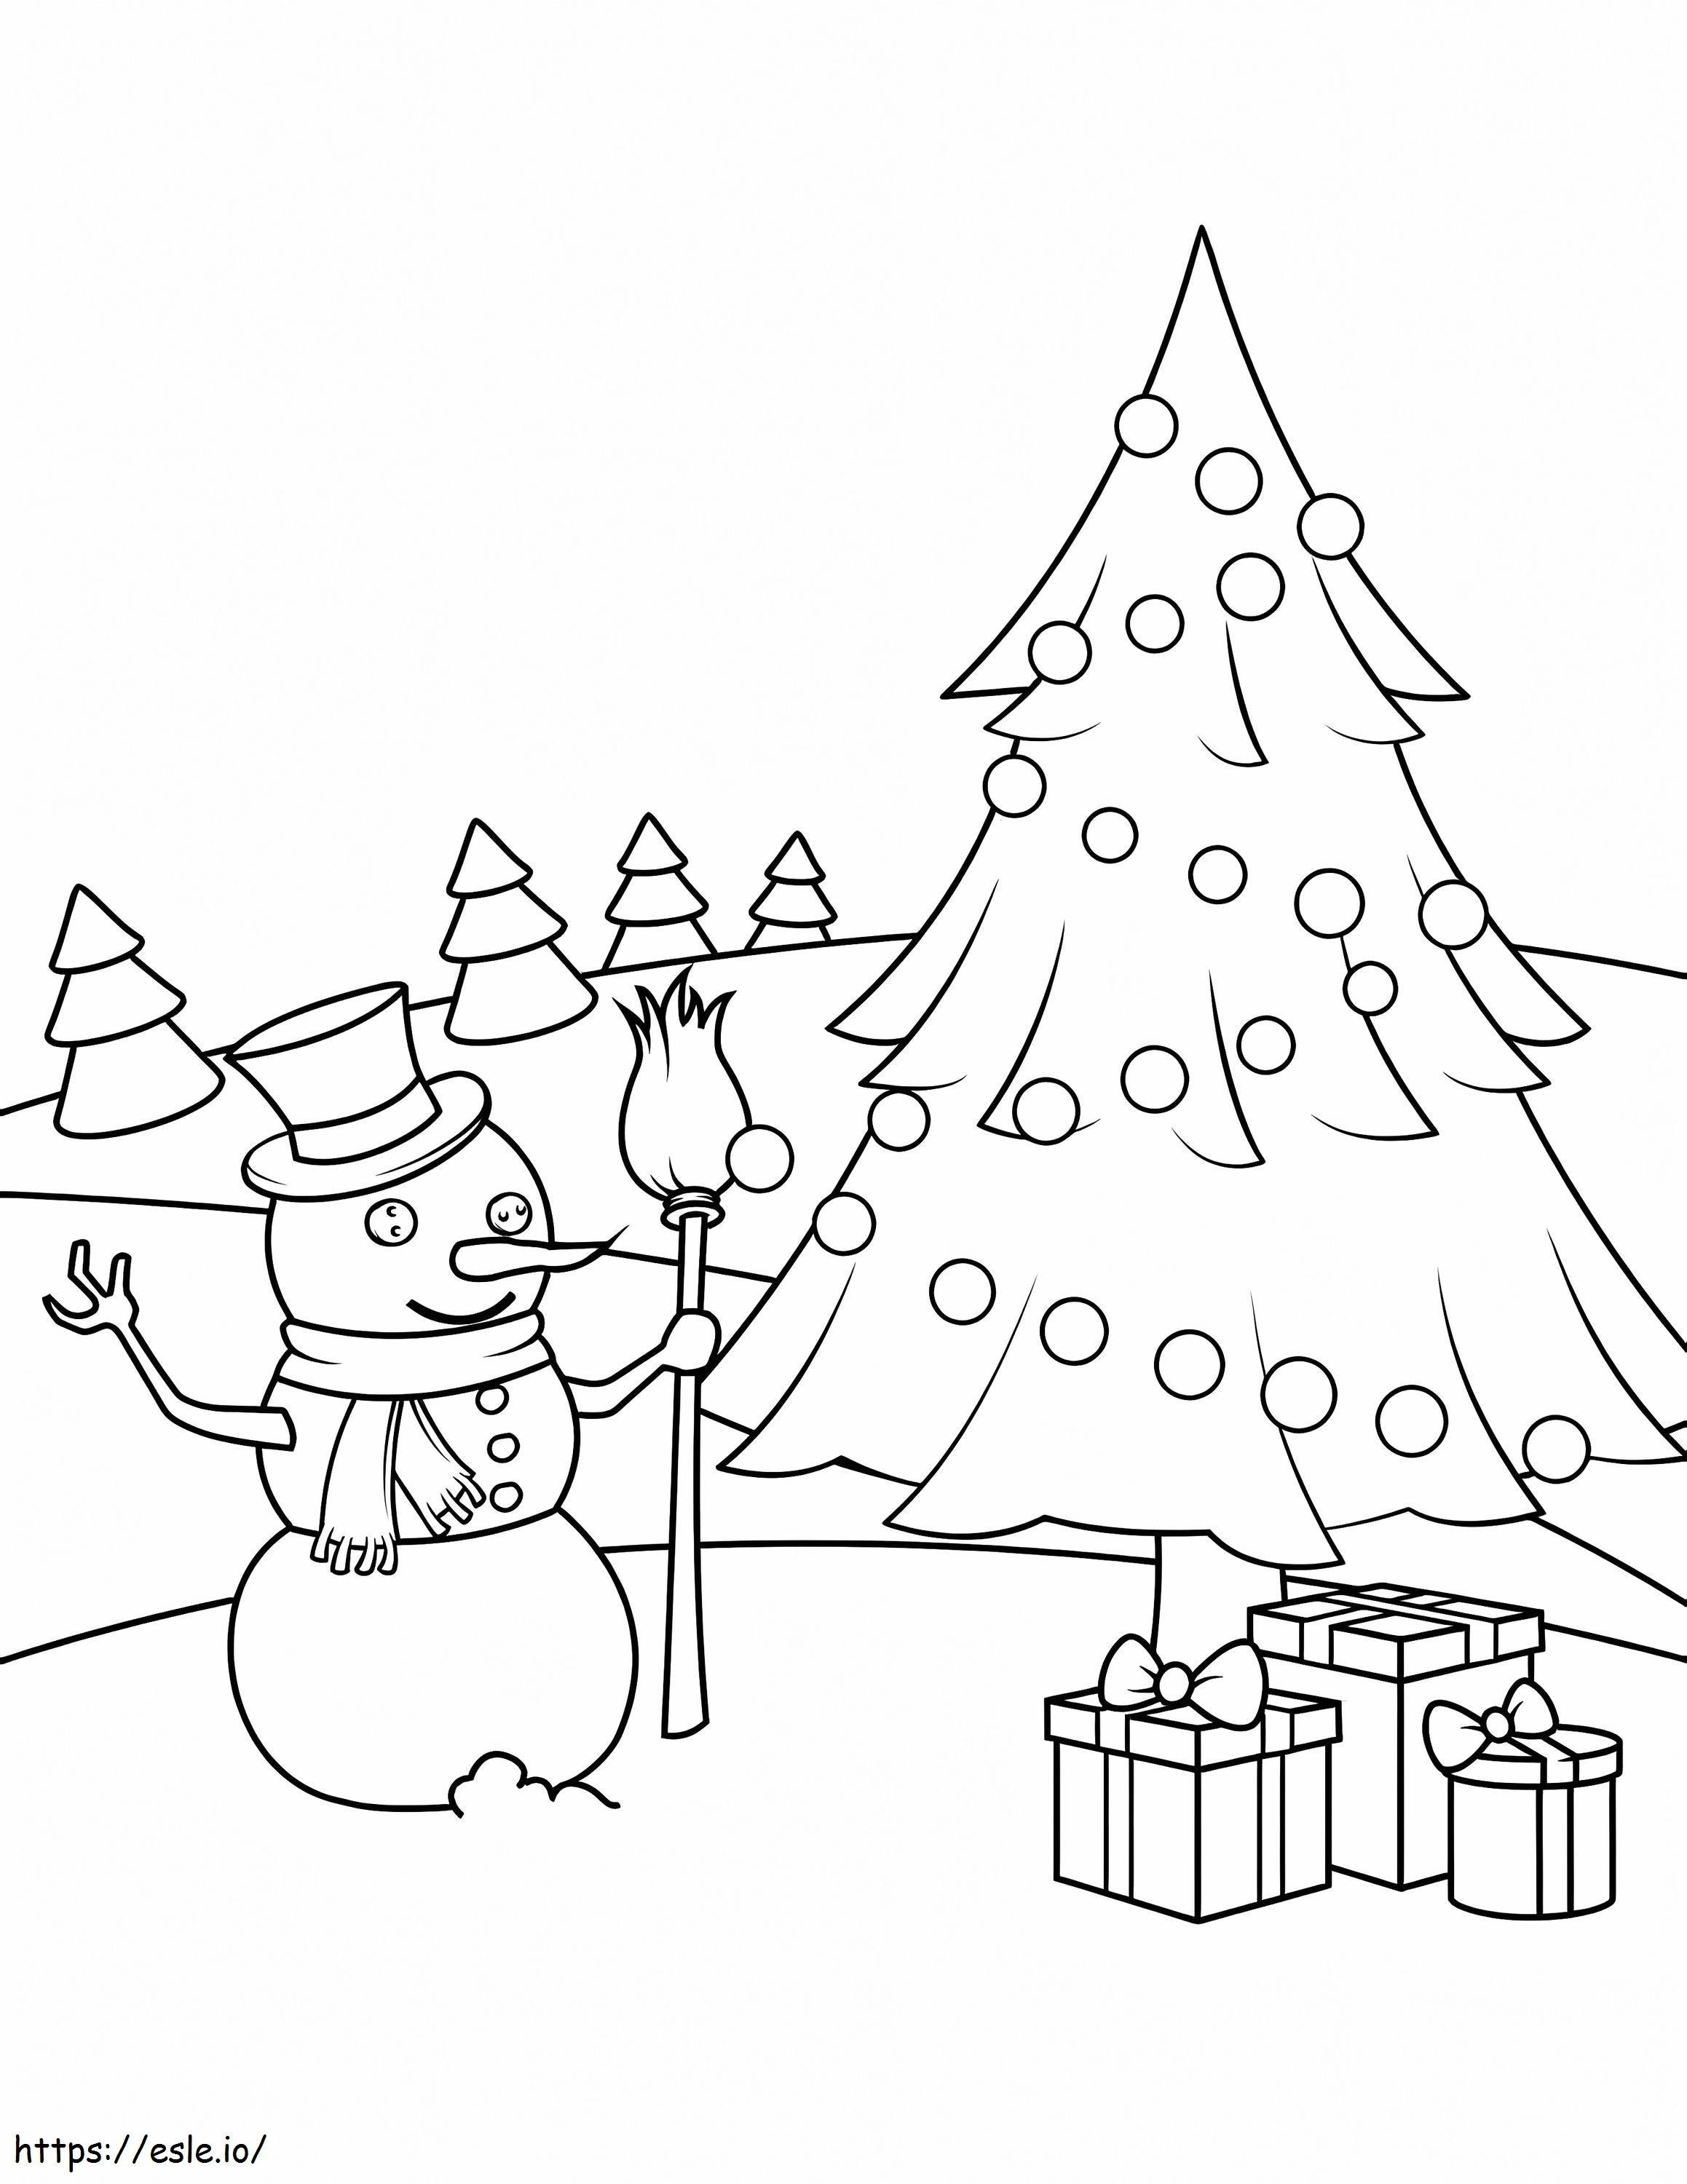 muñeco de nieve y árbol de navidad para colorear